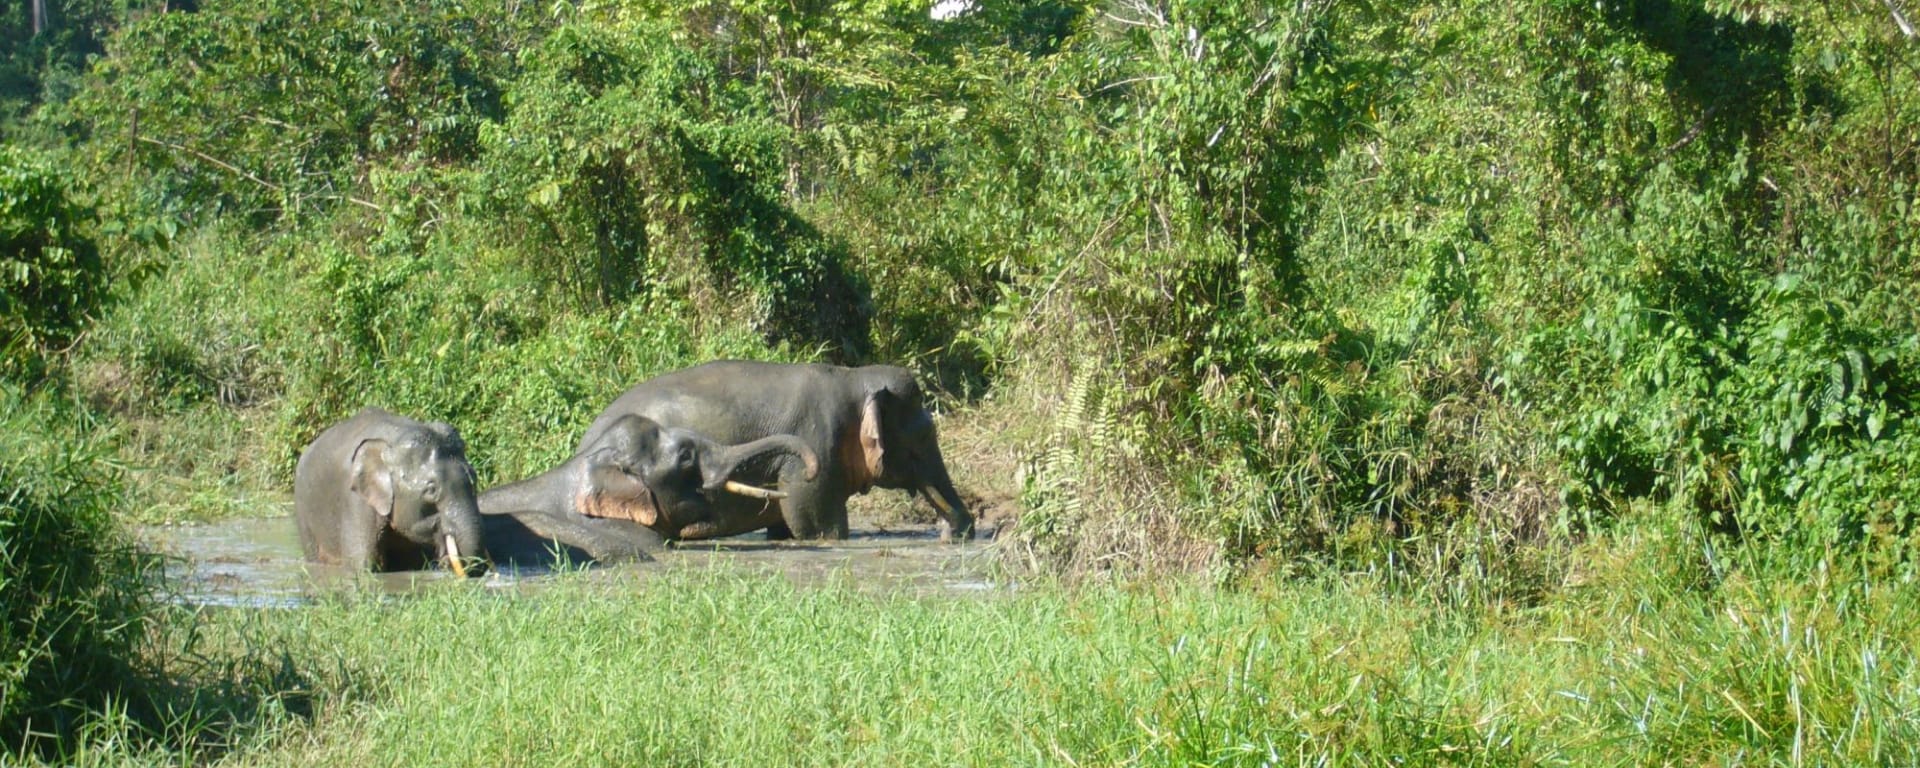 Bornéo Wildlife / Tabin Wildlife Reserve de Kota Kinabalu: Tabin Wildlife Resort: Borneo Pygmy Elephant